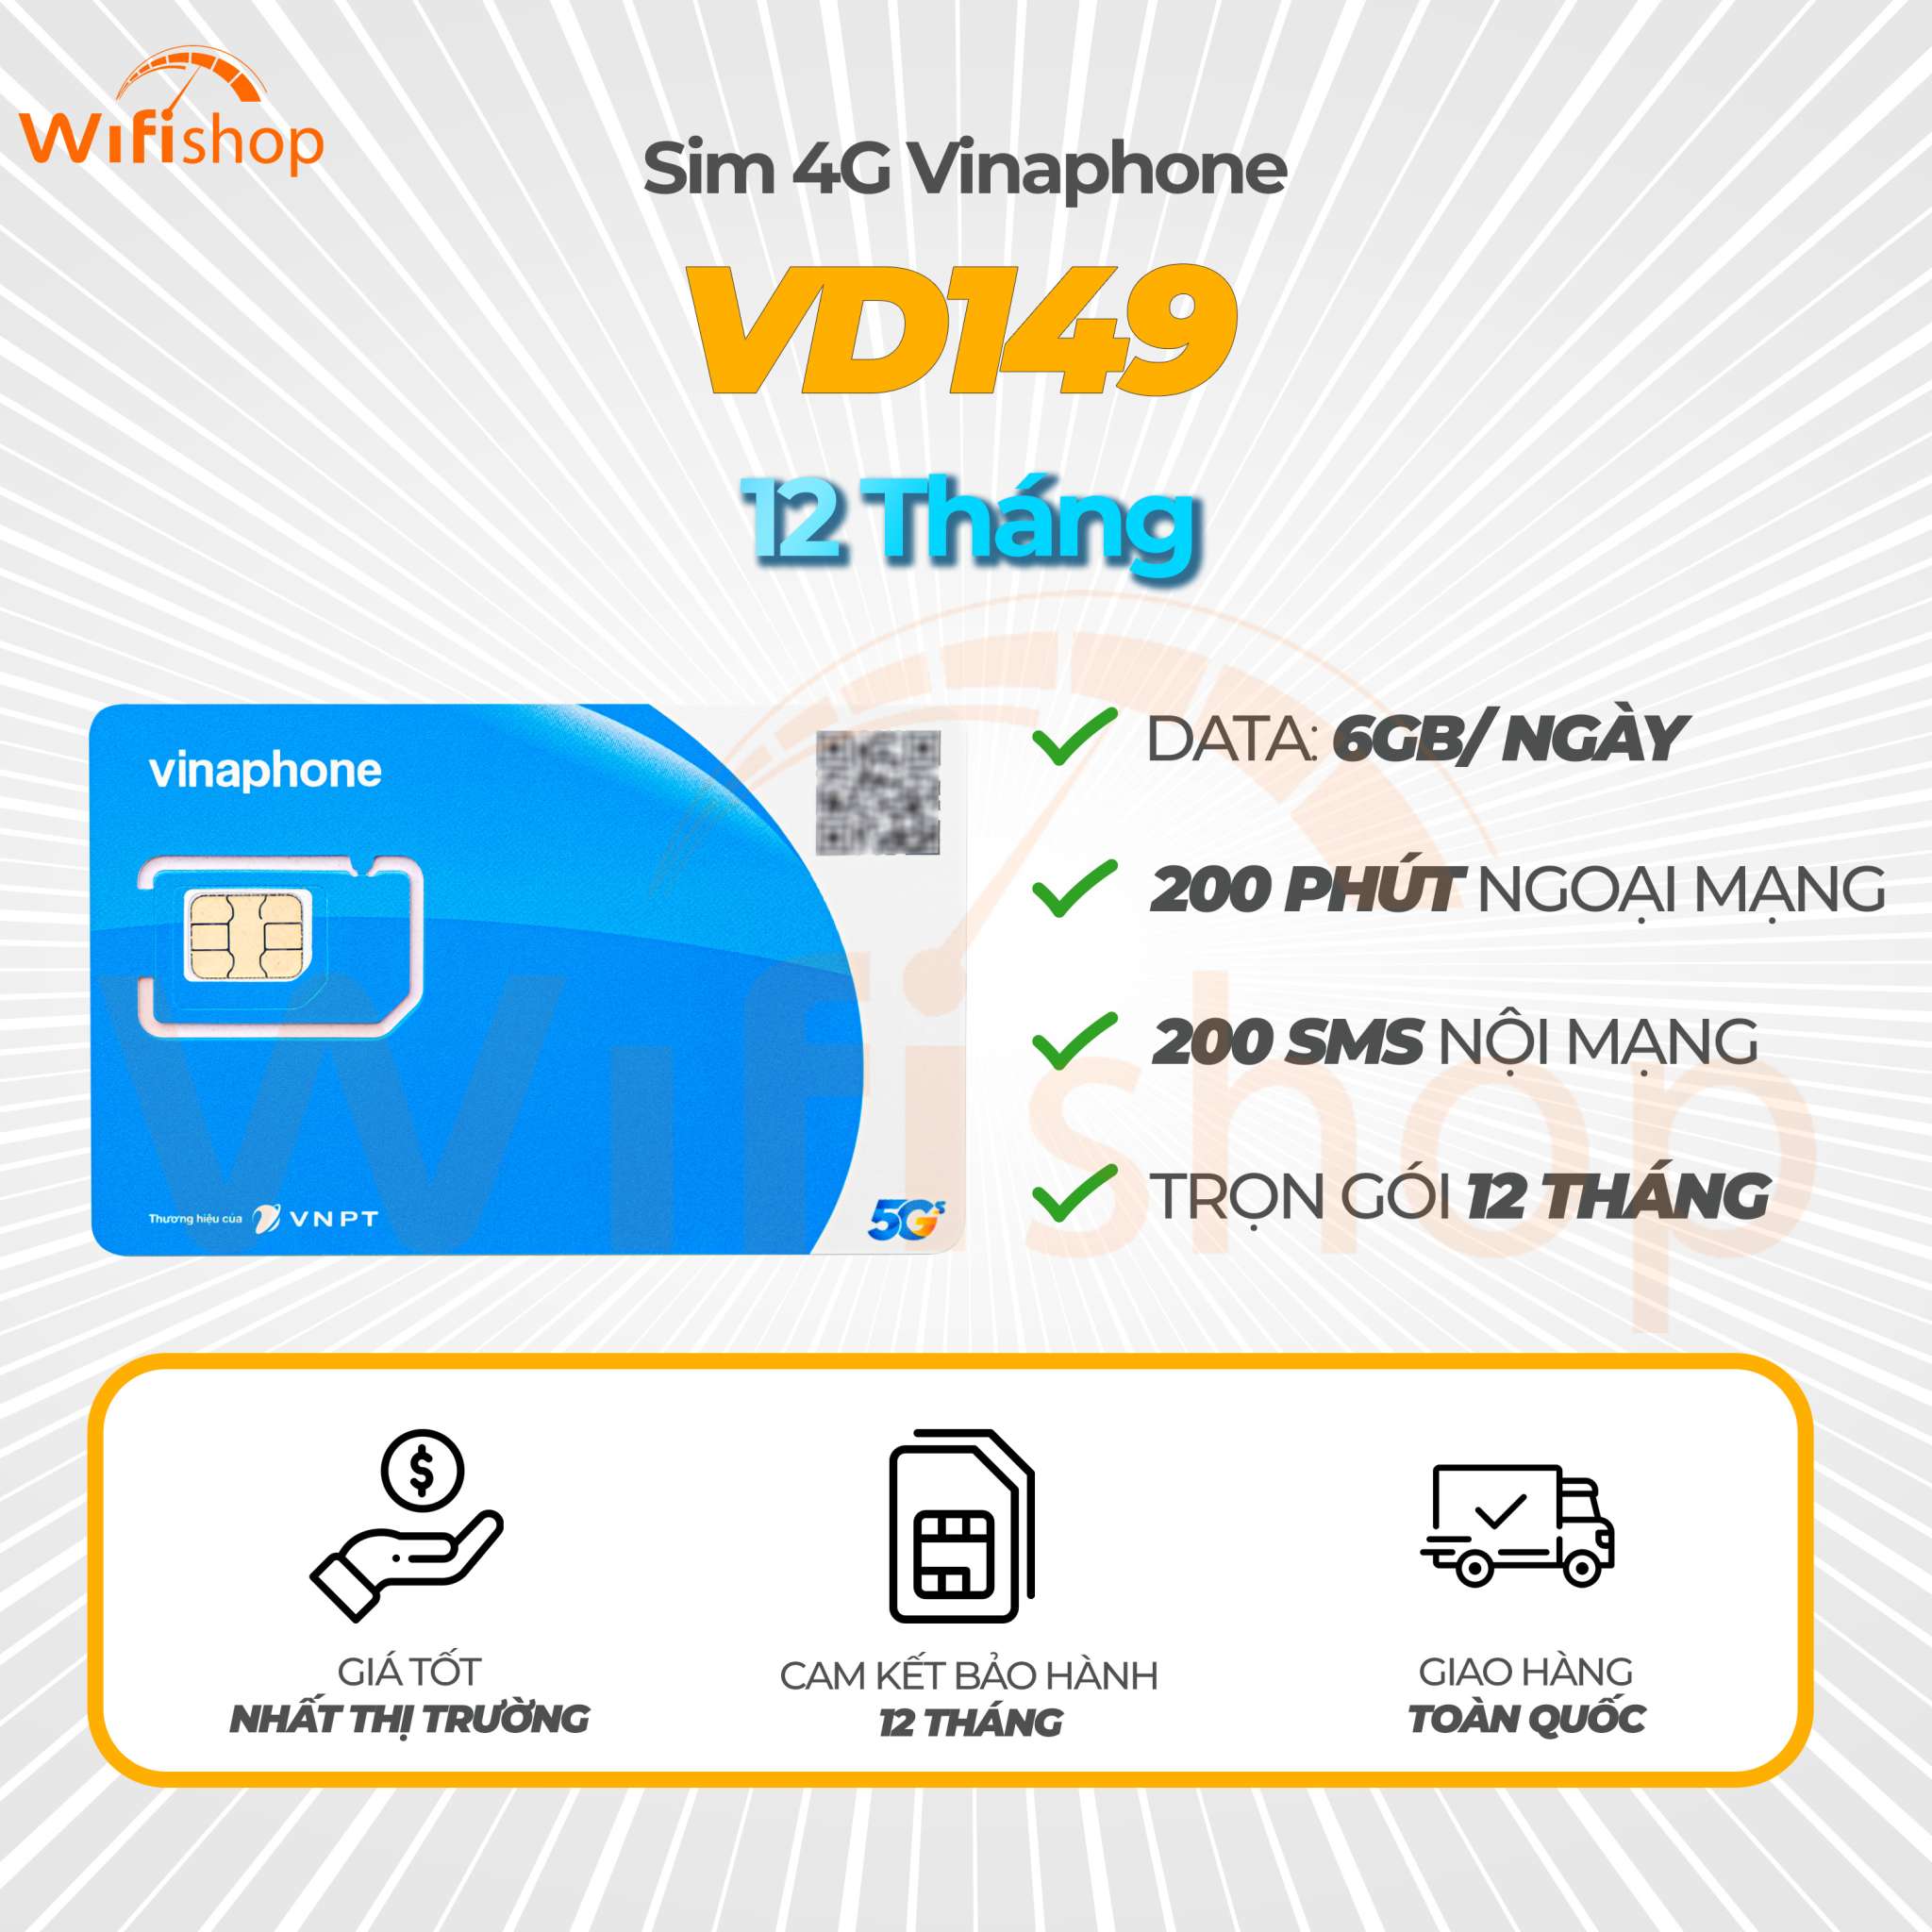 Sim 4G Vinaphone VD149 6GB/Ngày, miễn phí gọi thoại, 12 tháng không nạp tiền